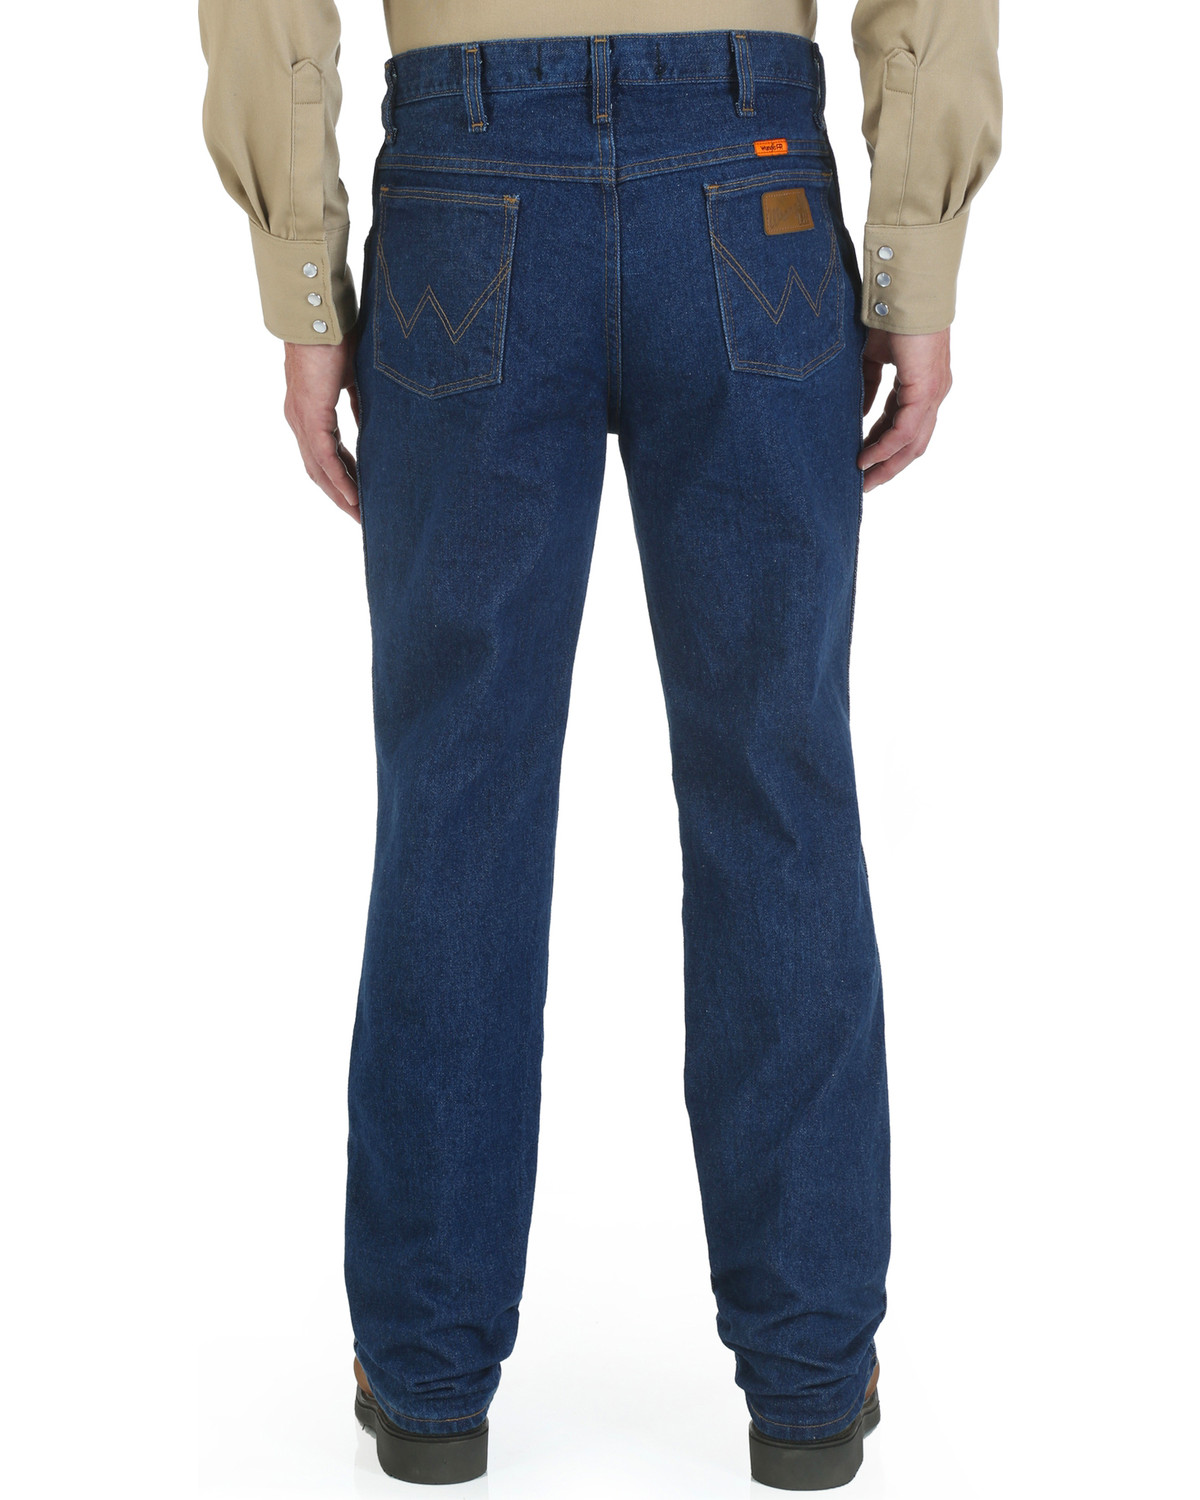 Wrangler Men's FR Slim Fit Straight Jeans